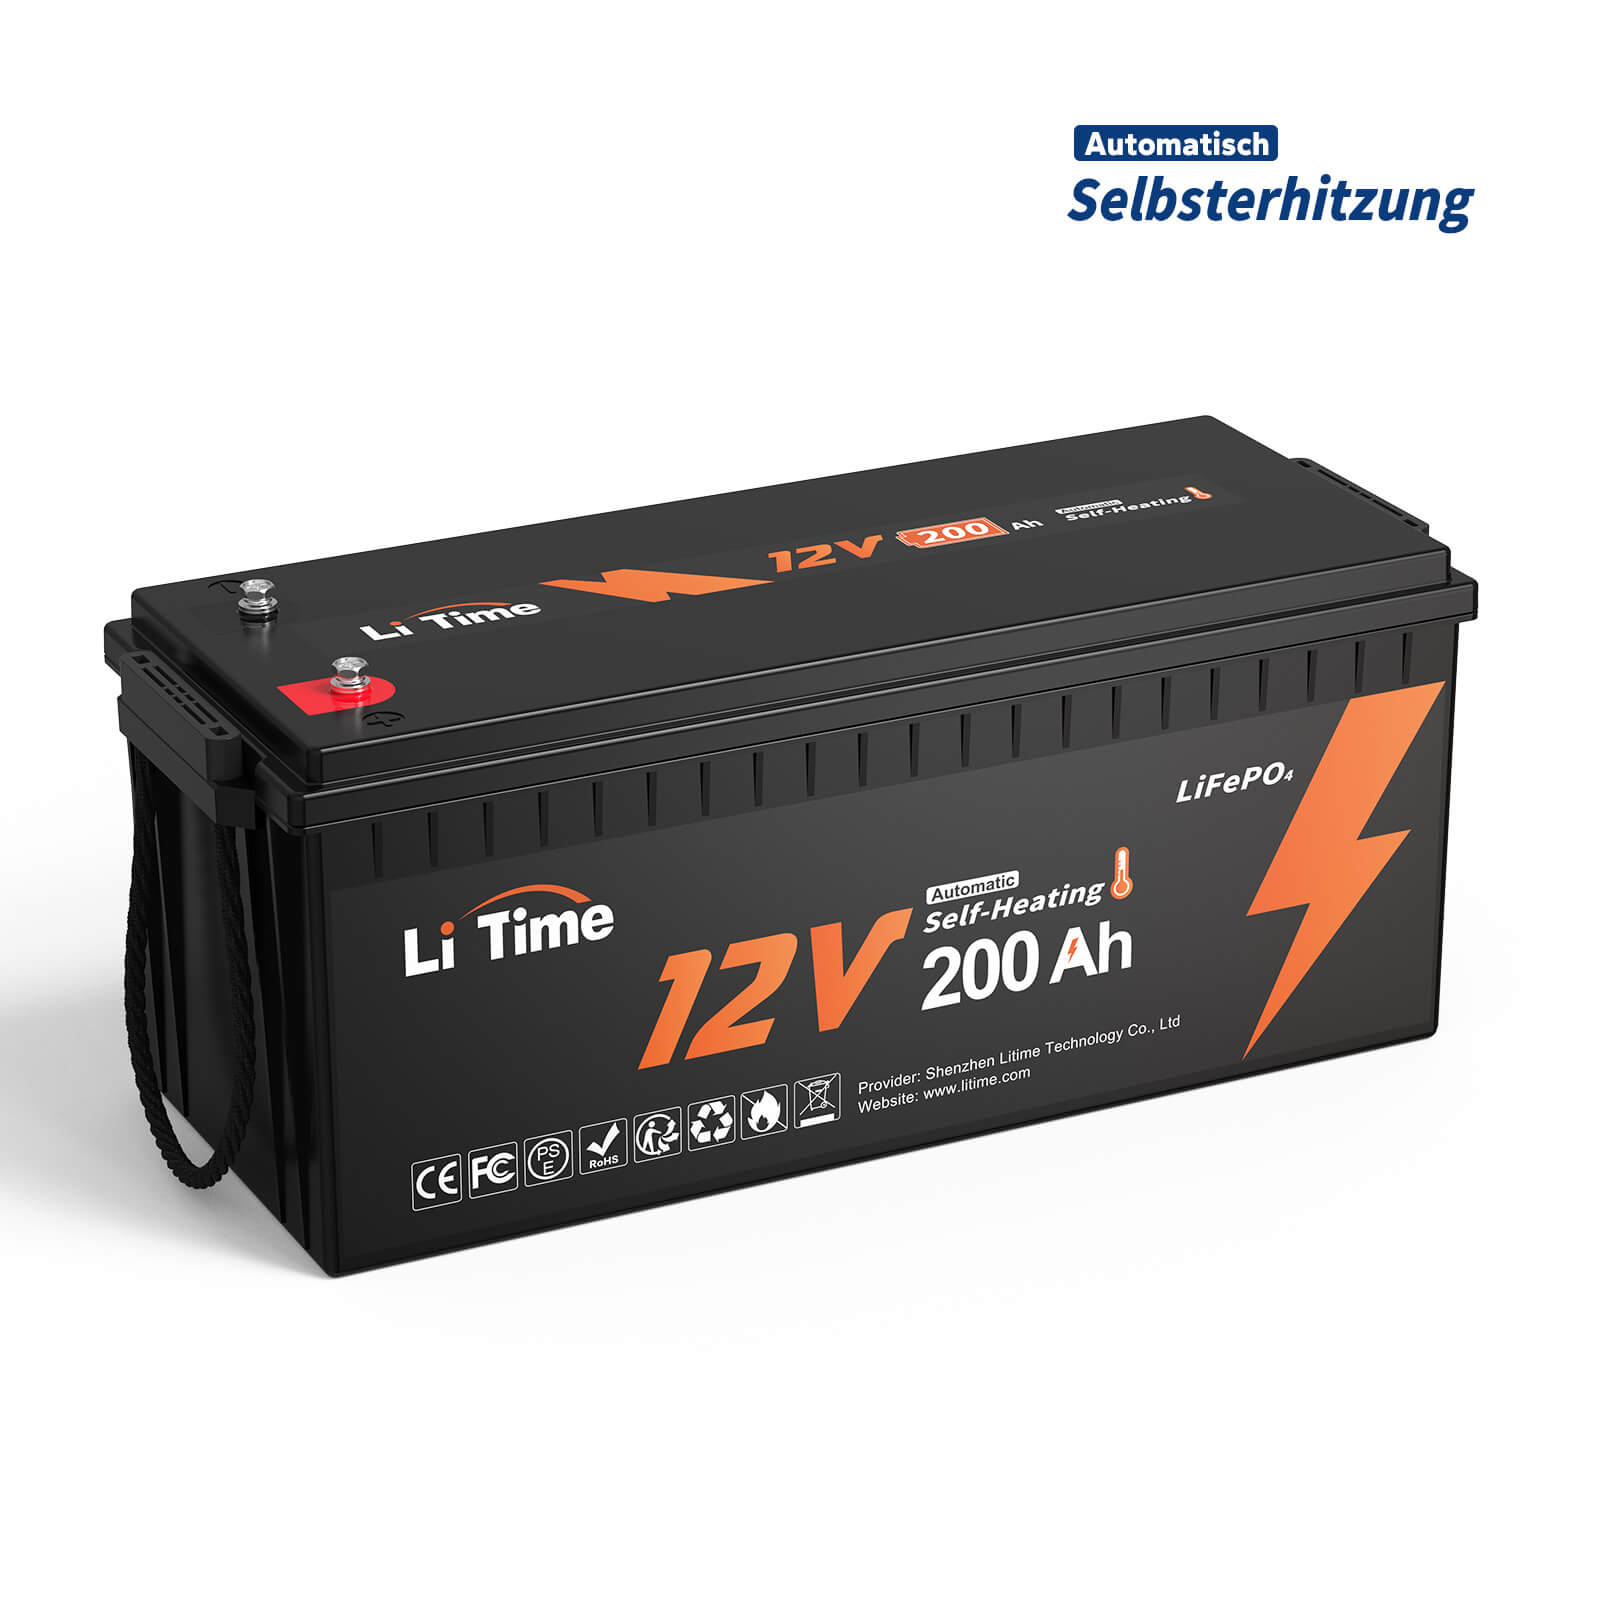 【0% VAT】 LiTime 12V 200Ah, samonagrzewający się akumulator litowy LiFePO4 z 100A BMS, obsługuje ładowanie w niskiej temperaturze -20°C